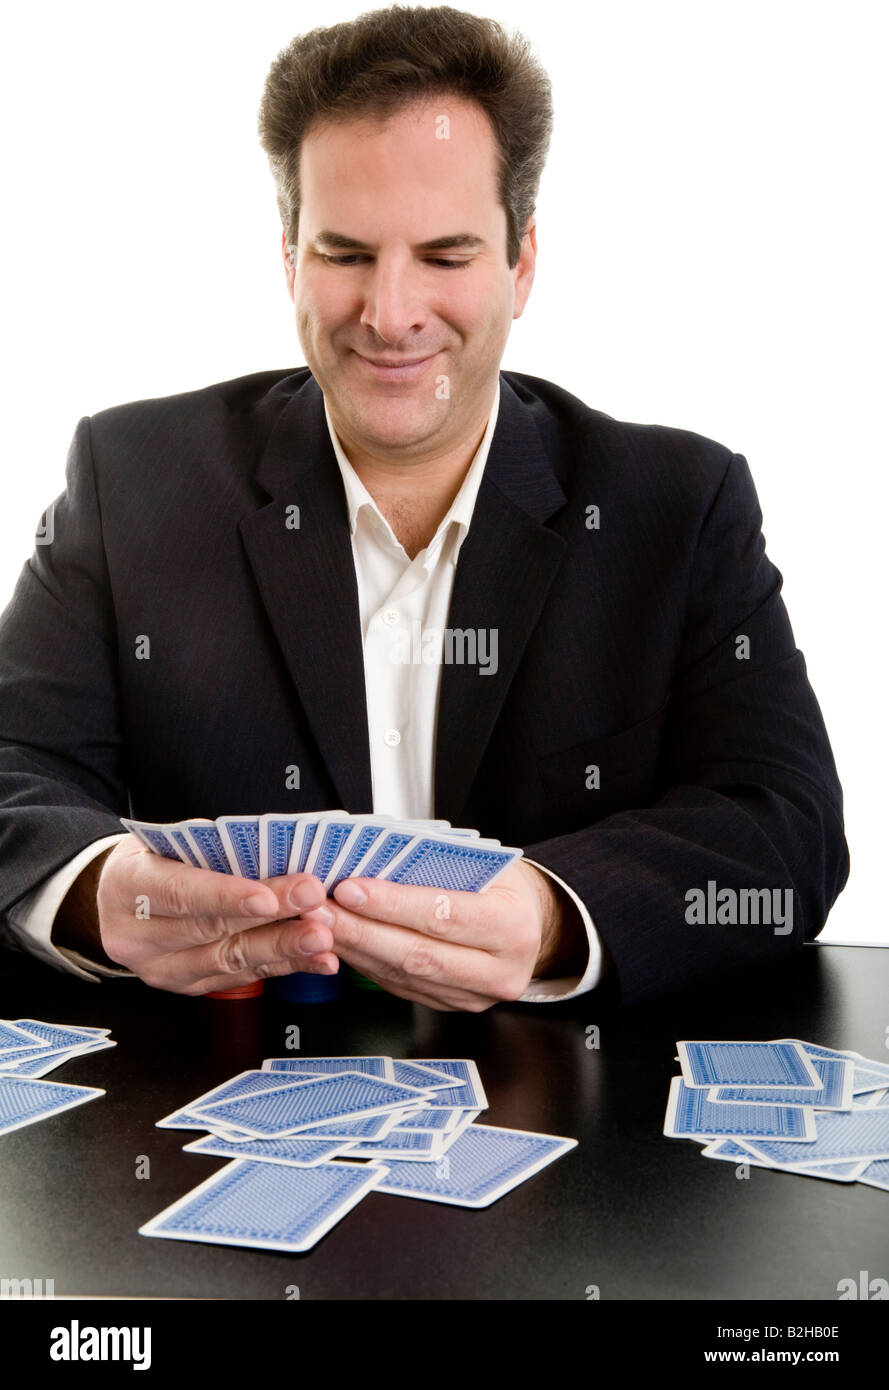 Spielkarten Kartenspiel Glücksspiel Spiel Hand Spieler Geschäftsmann Verkäufer Kaufmann Hemd Kragen manager Stockfoto